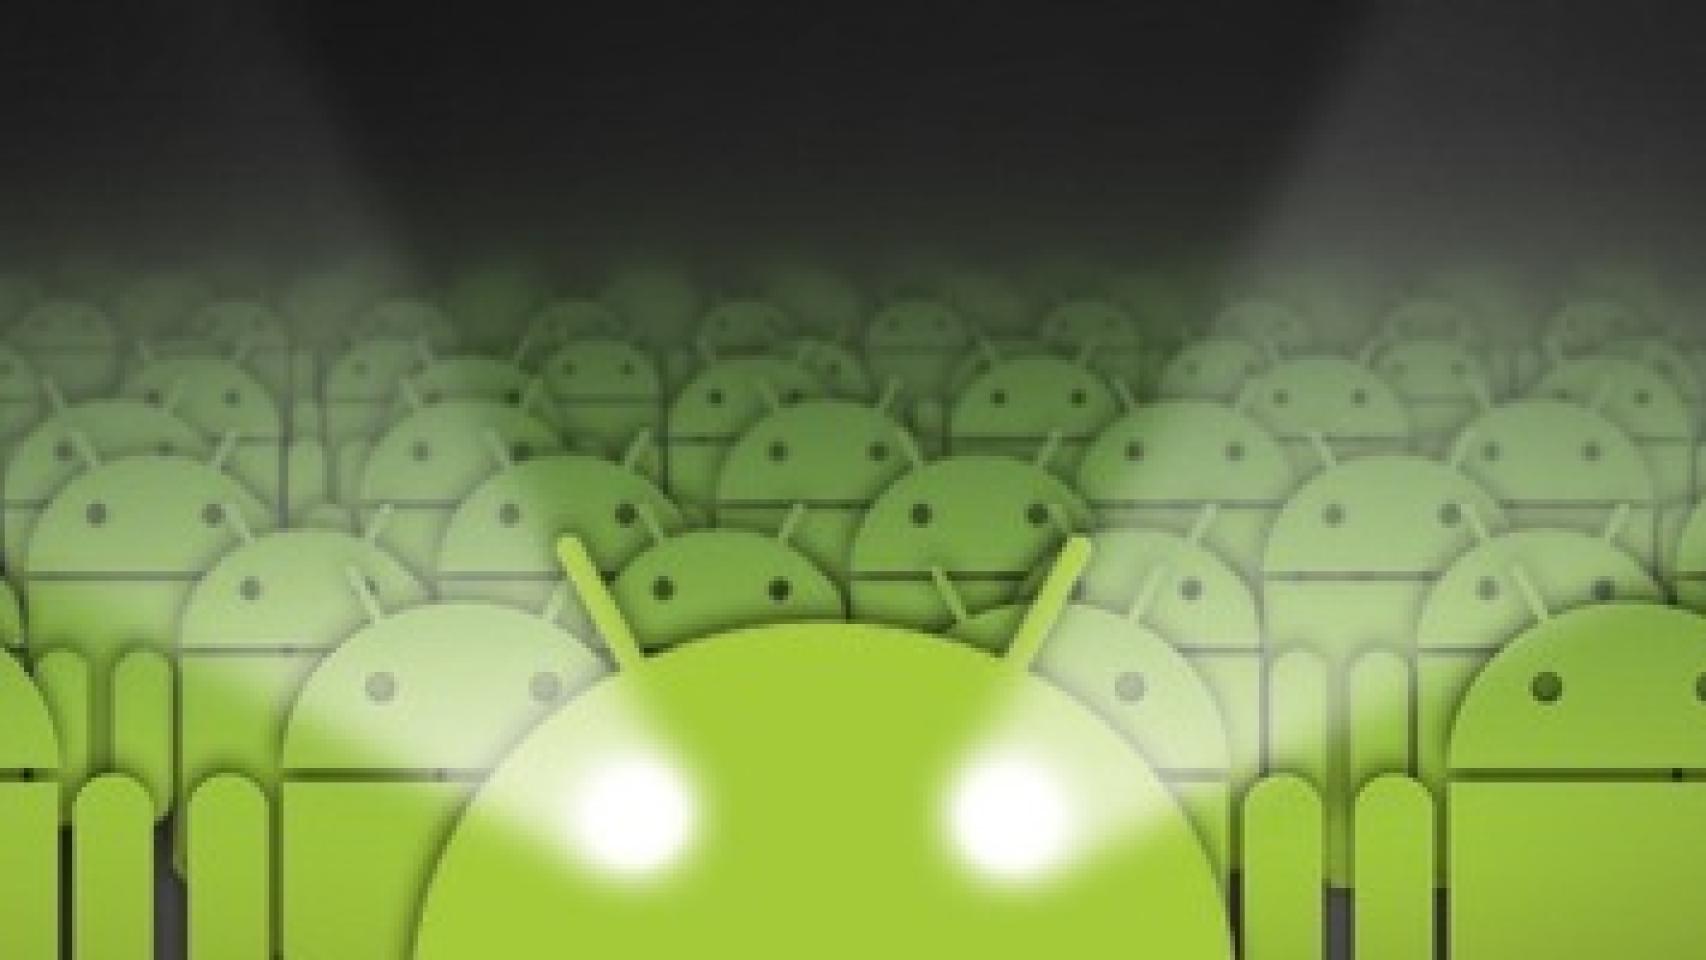 Android se supera a si mismo: 700.000 activaciones diarias